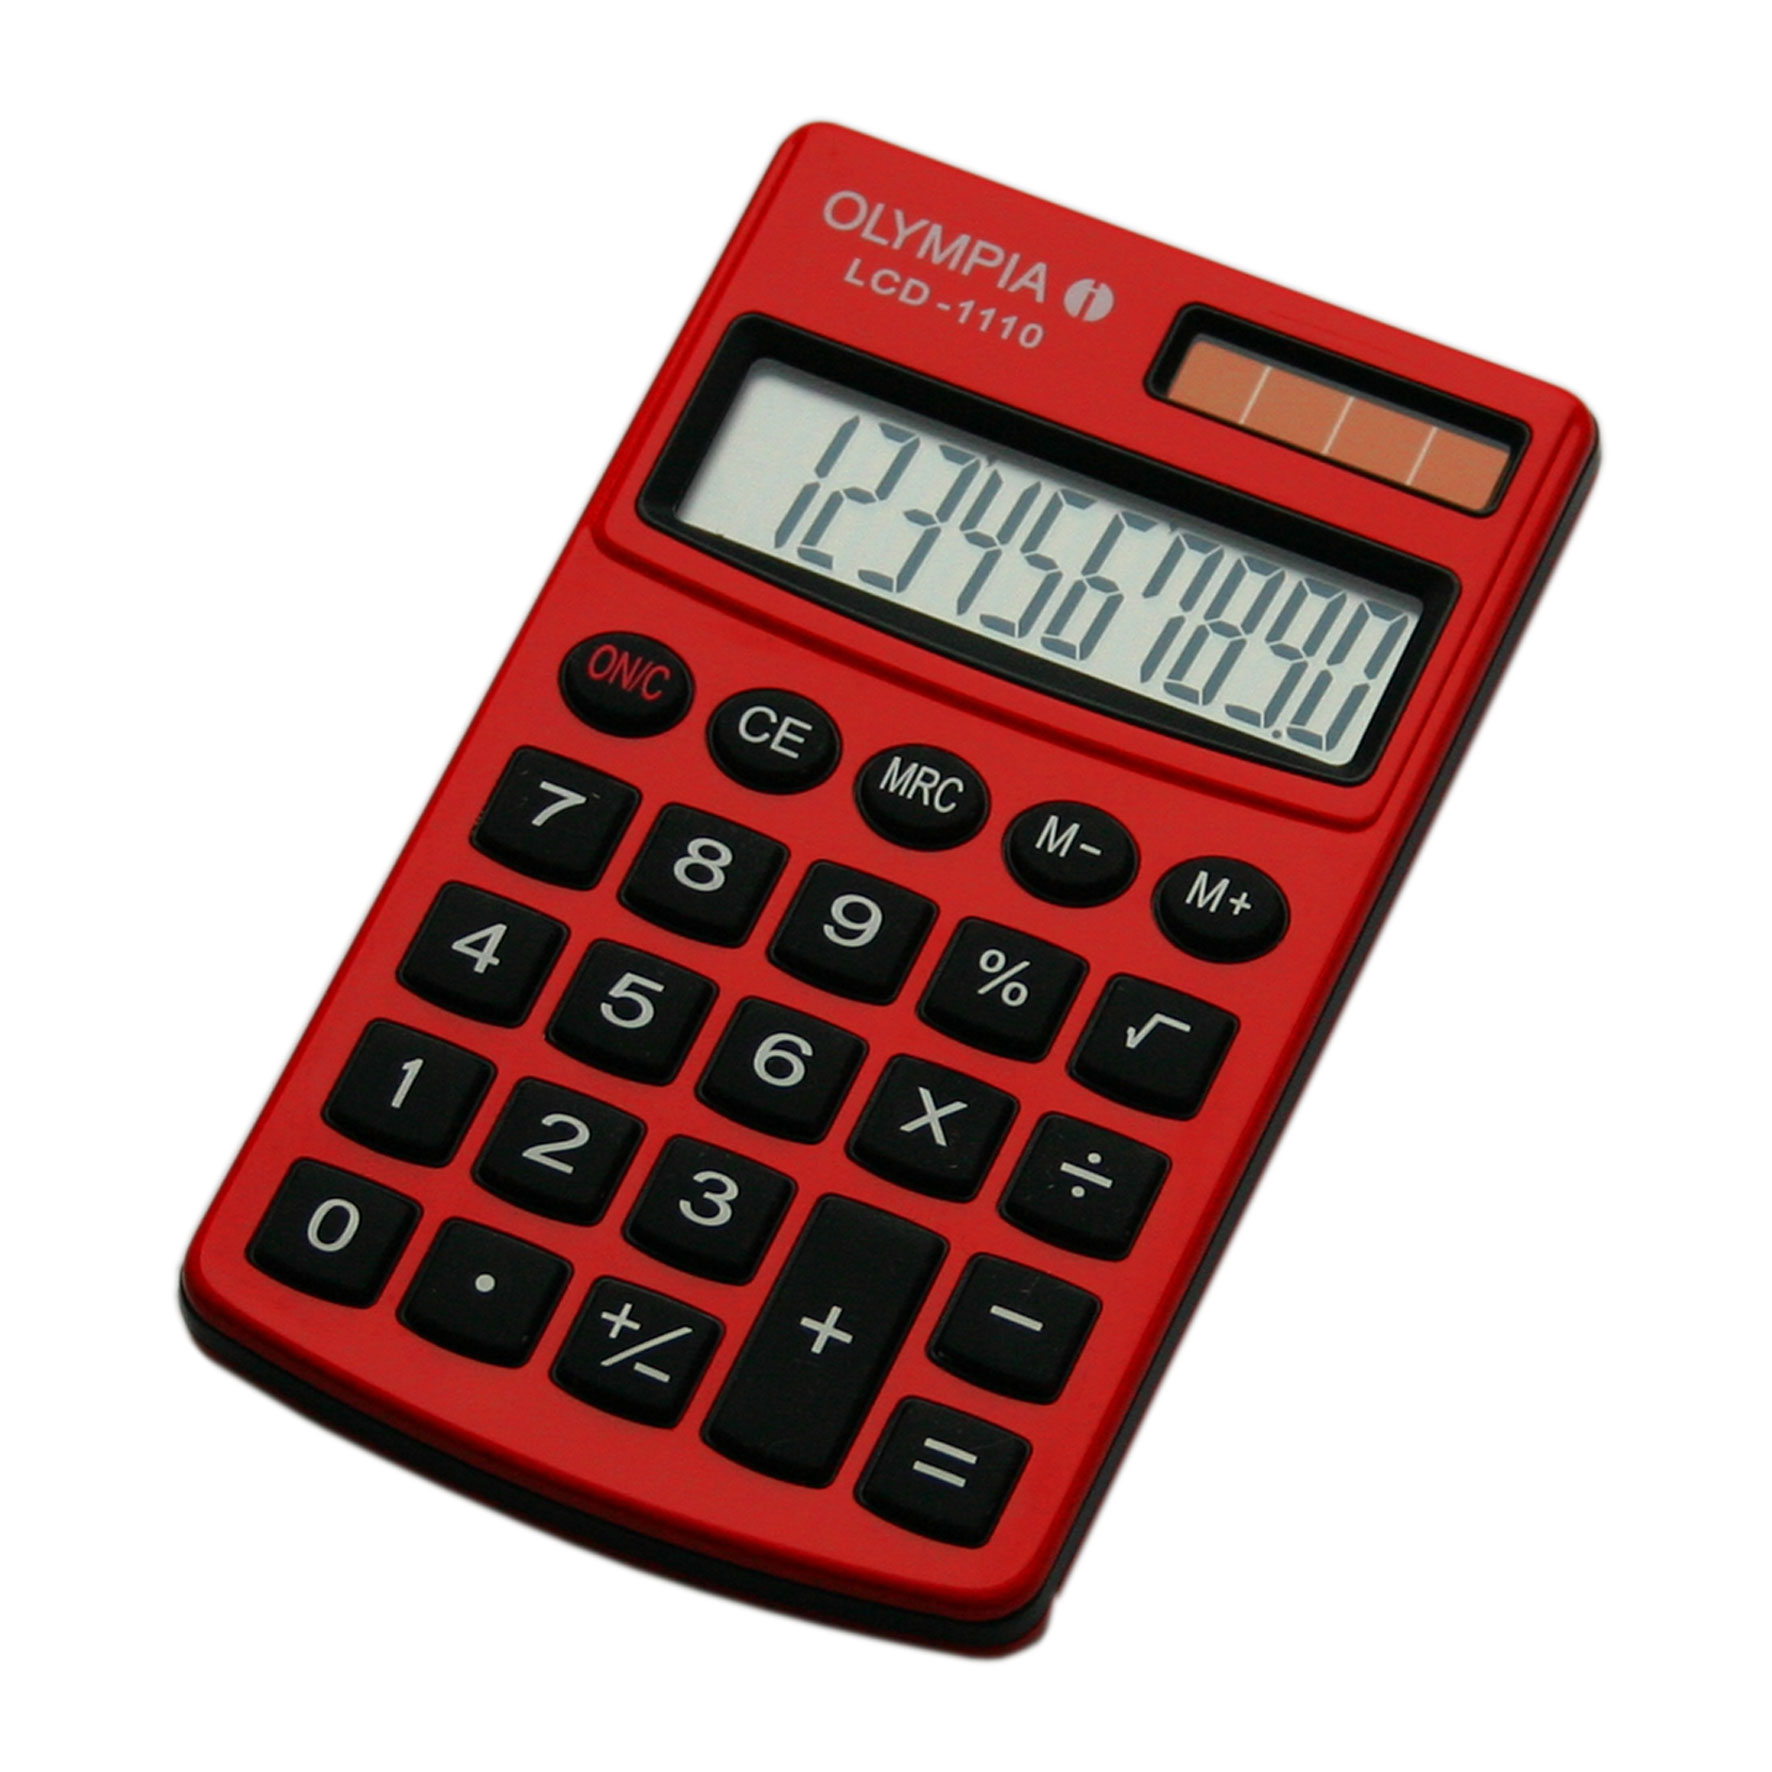 Olympia LCD 1110 - Tasche - Einfacher Taschenrechner - 10 Ziffern - 1 Zeilen - Rot